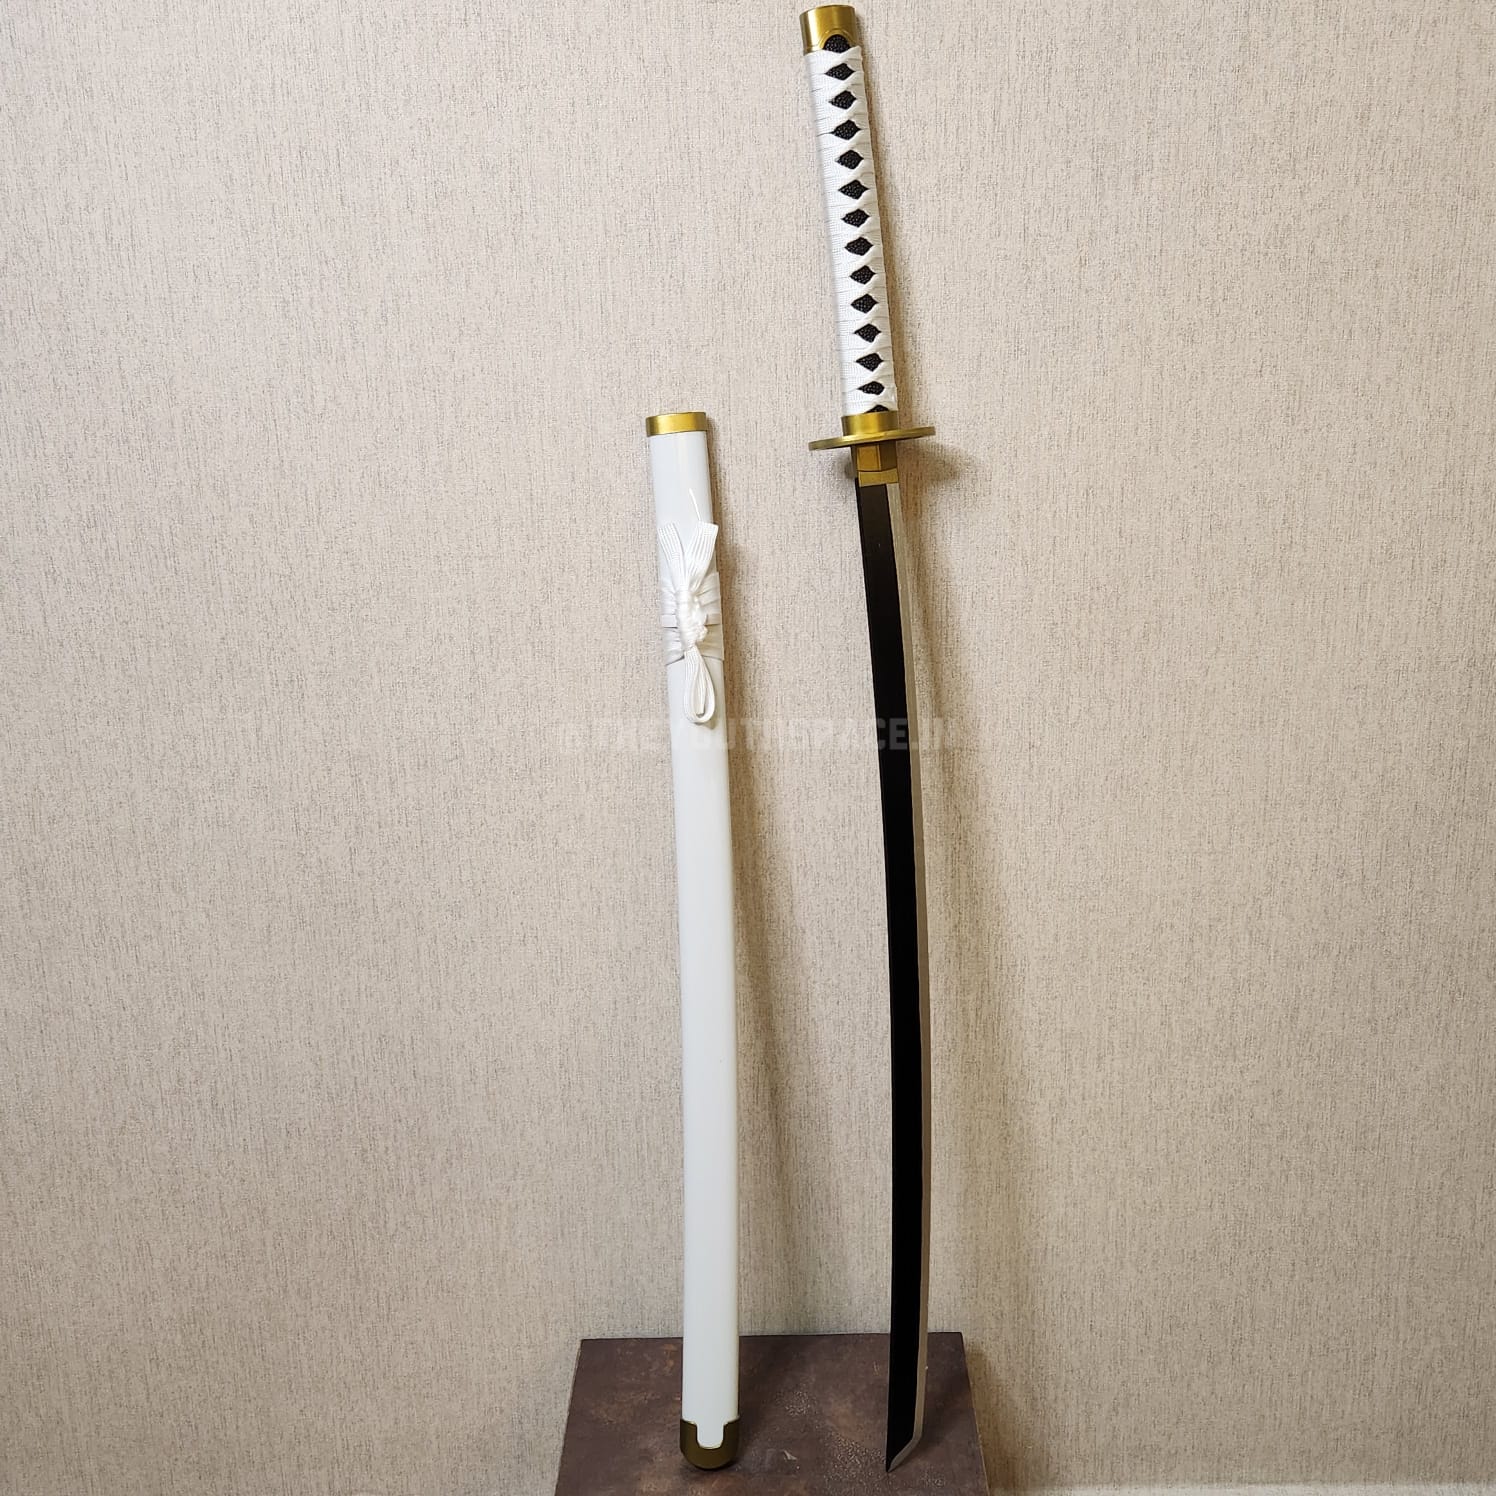 Zoro's Wado Ichimonji wooden katana